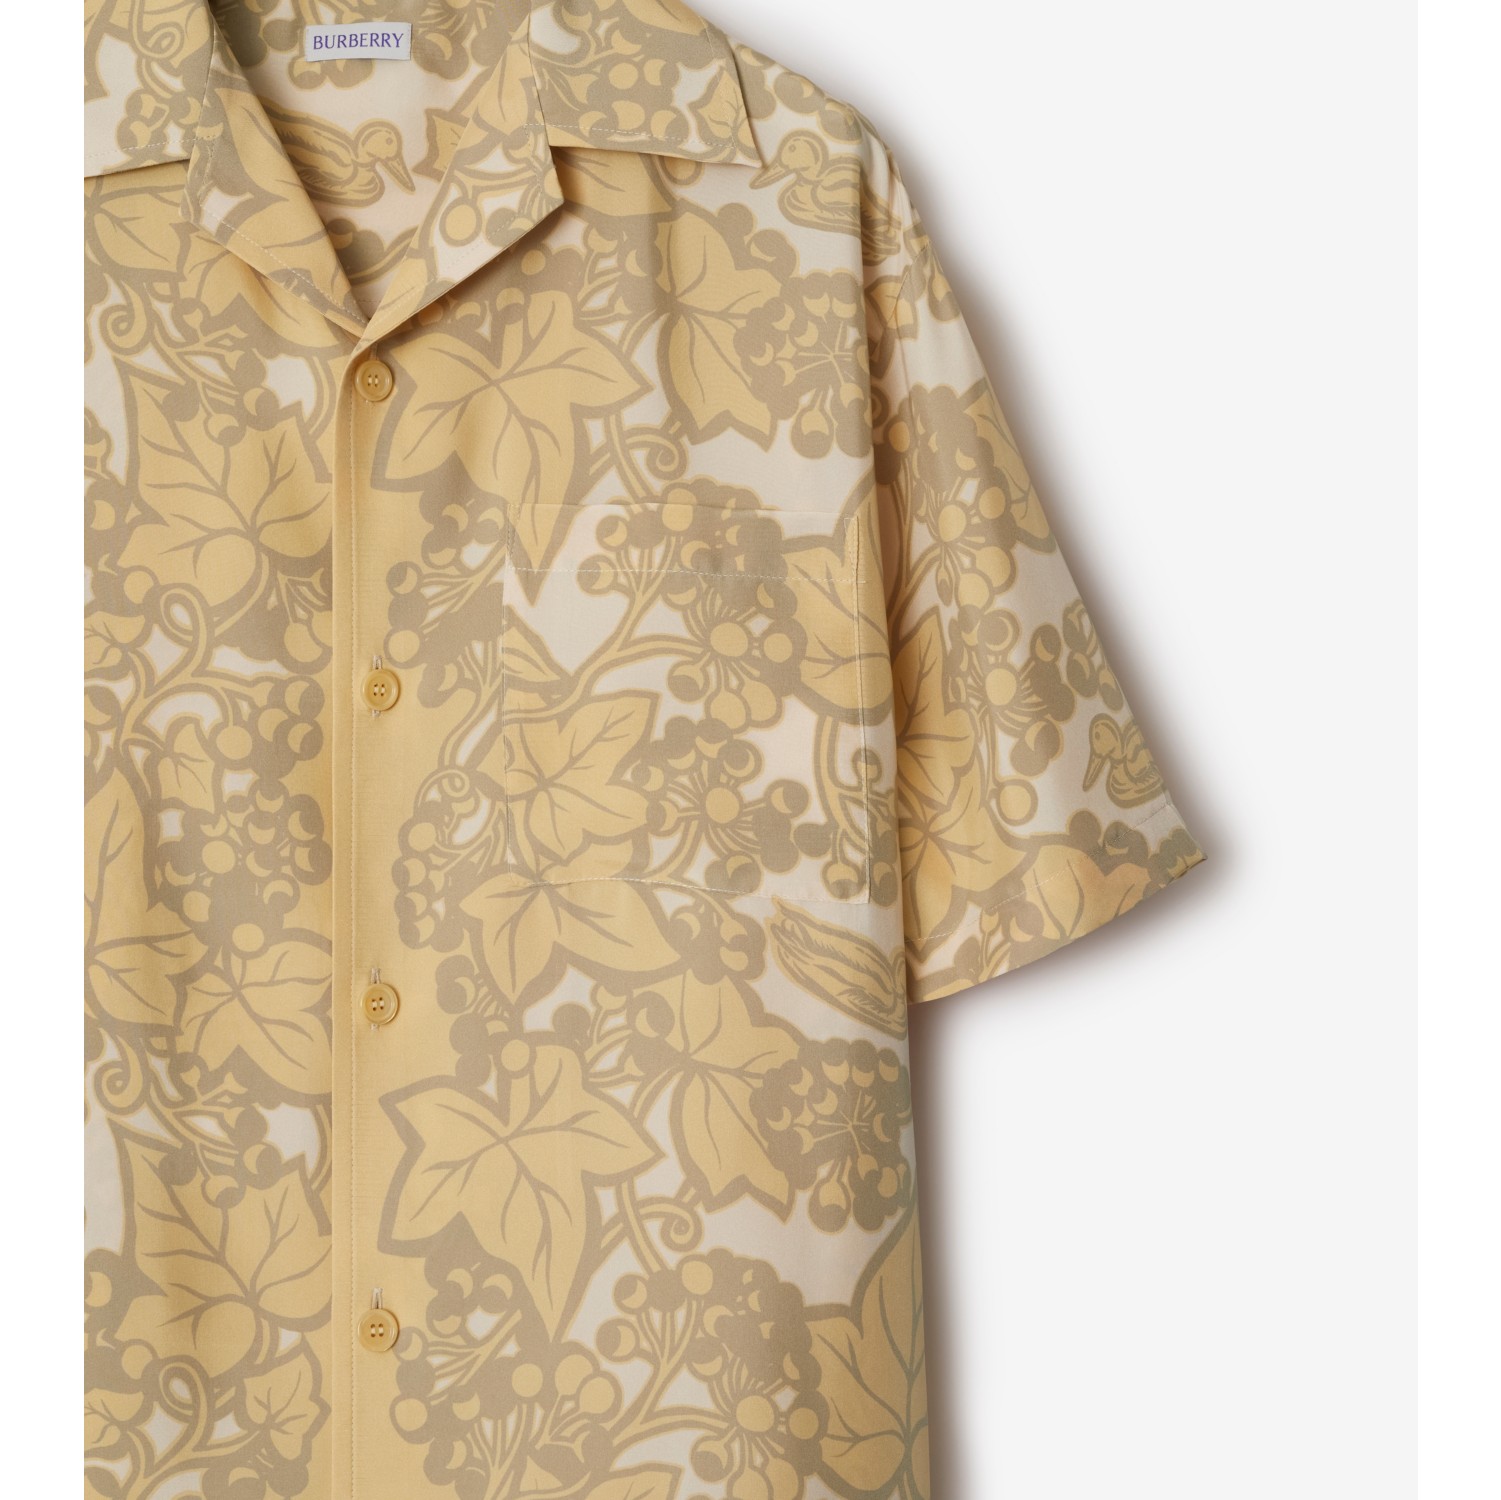 Camicia del pigiama in seta con edera